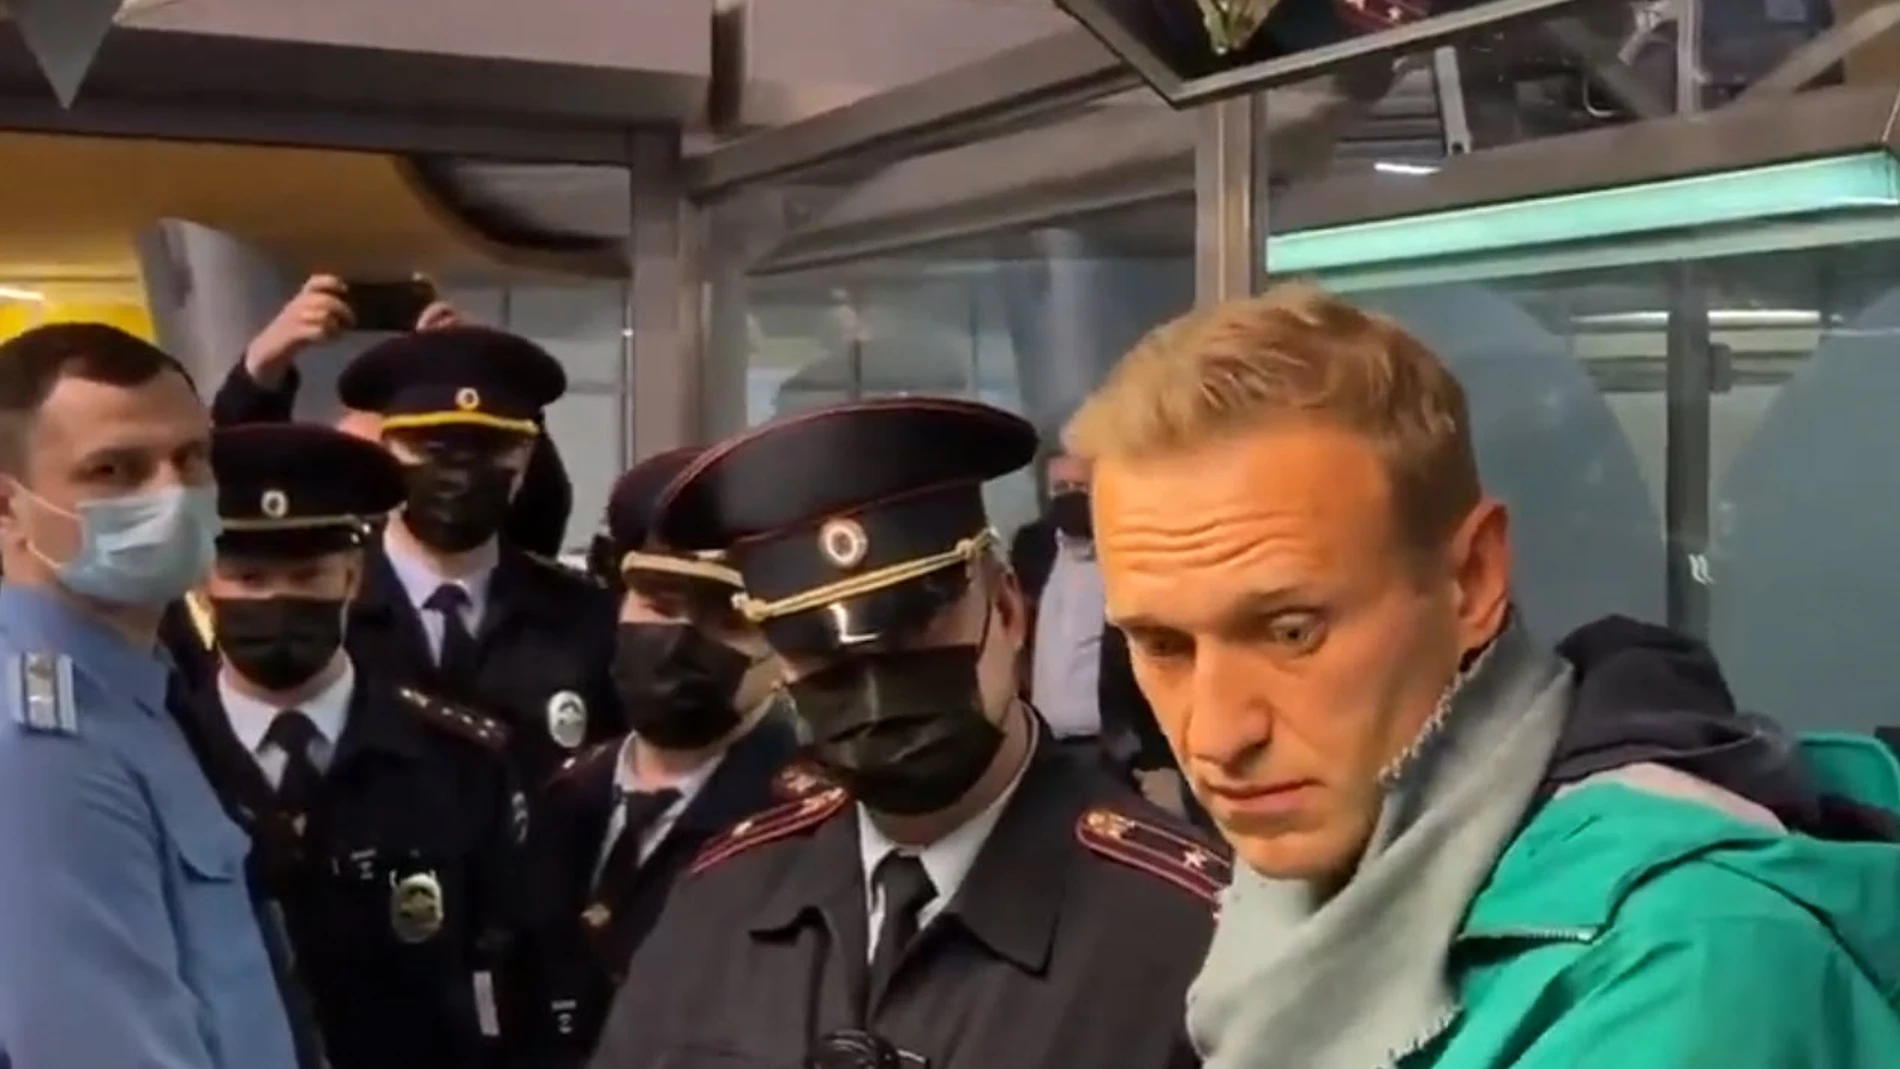 Detención del activista político ruso Alexei Navalni en el aeropuerto de MoscúSIMPATIZANTES DE NAVALNI17/01/2021